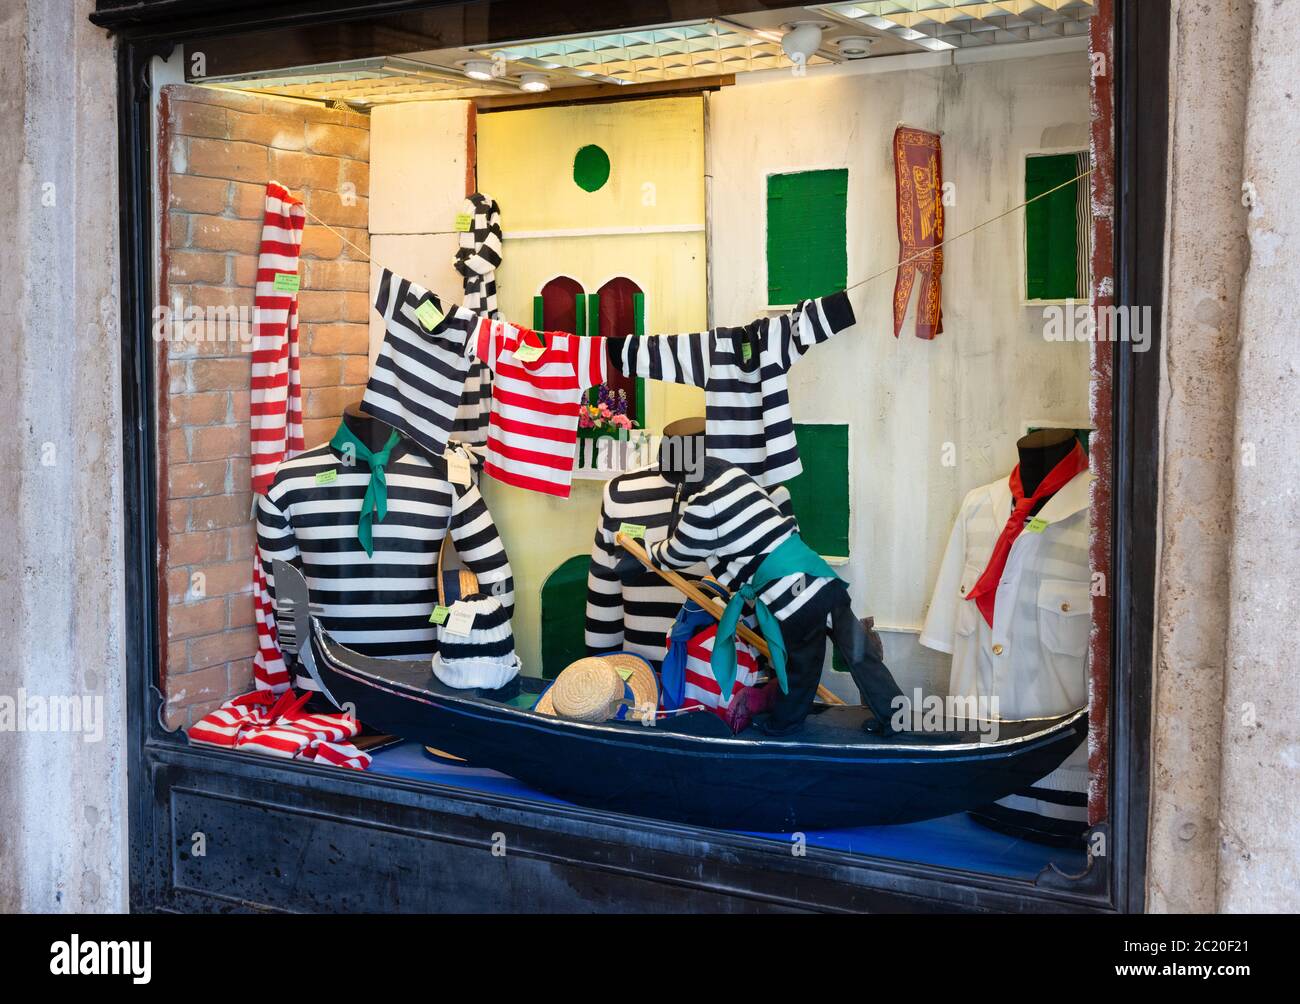 Catering für Touristen und möglicherweise Einheimische Gondolier Kostüme / Outfits einschließlich Stripptrikots und T-Shirts in einem Bekleidungsgeschäft Fenster Venedig Italien Stockfoto